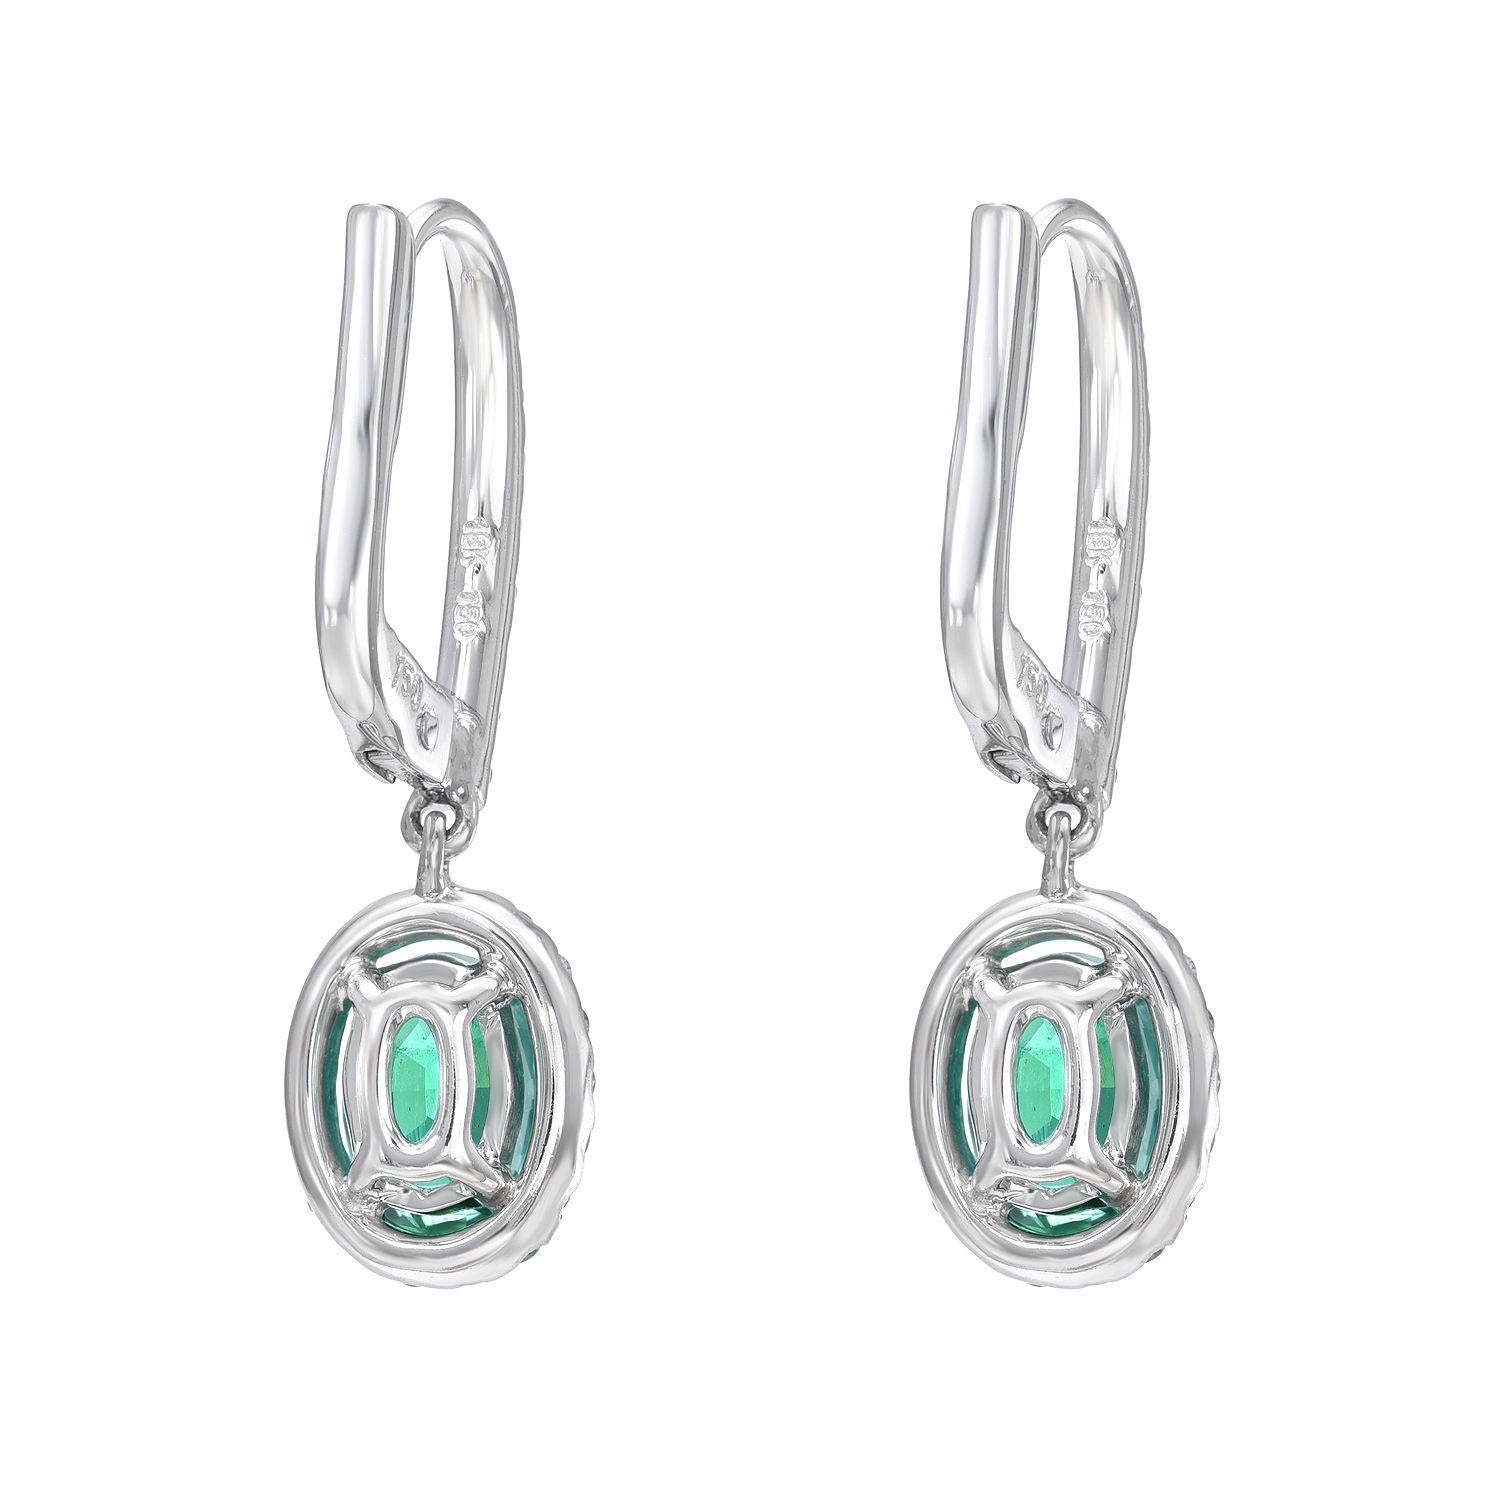 Oval Cut Emerald Earrings 1.50 Carat Ovals